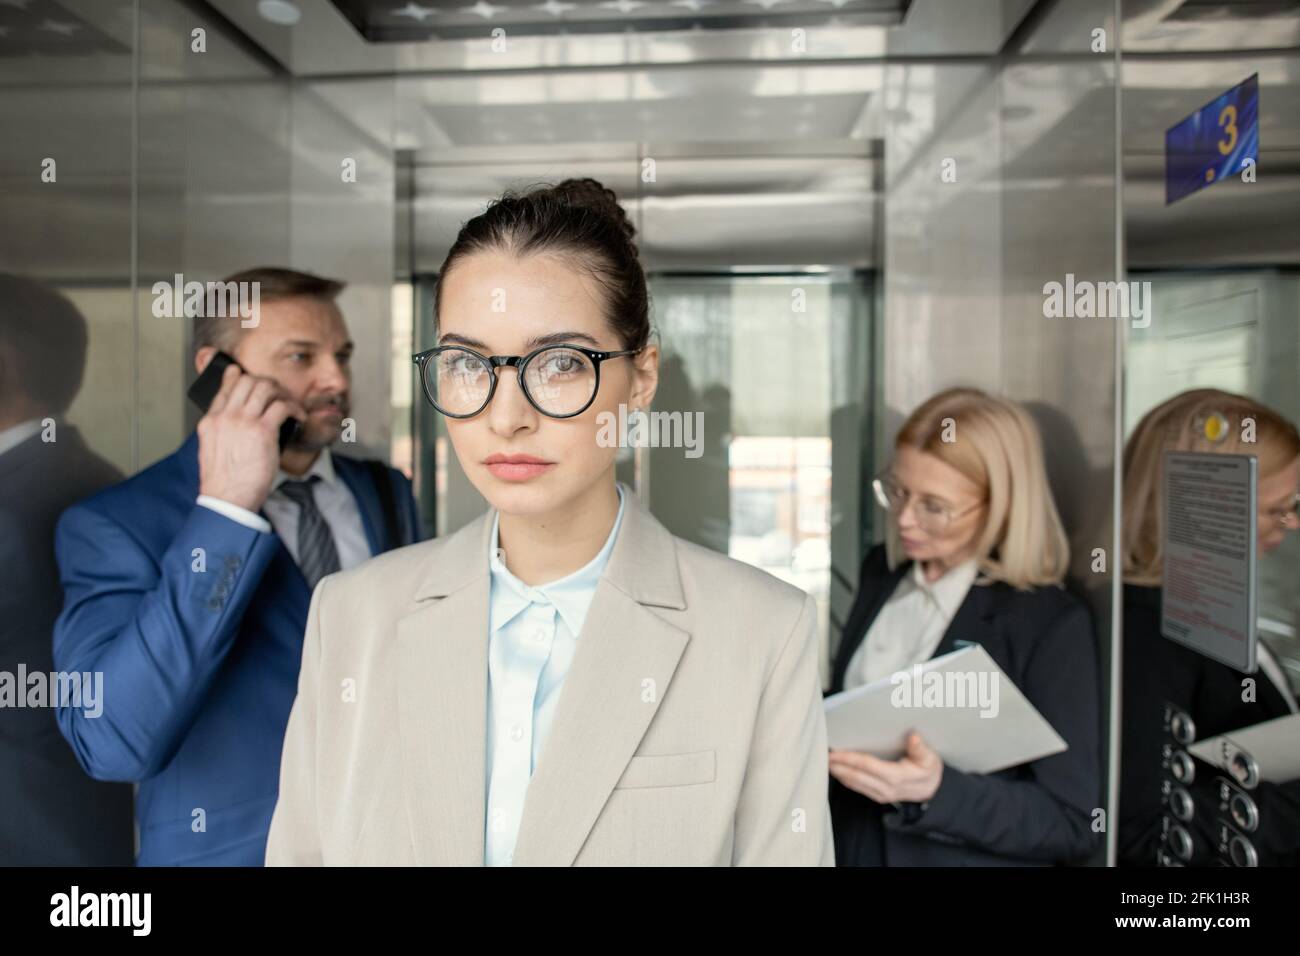 Portrait d'une femme d'affaires sérieuse attrayante debout dans un ascenseur avec personnes occupées en arrière-plan Banque D'Images